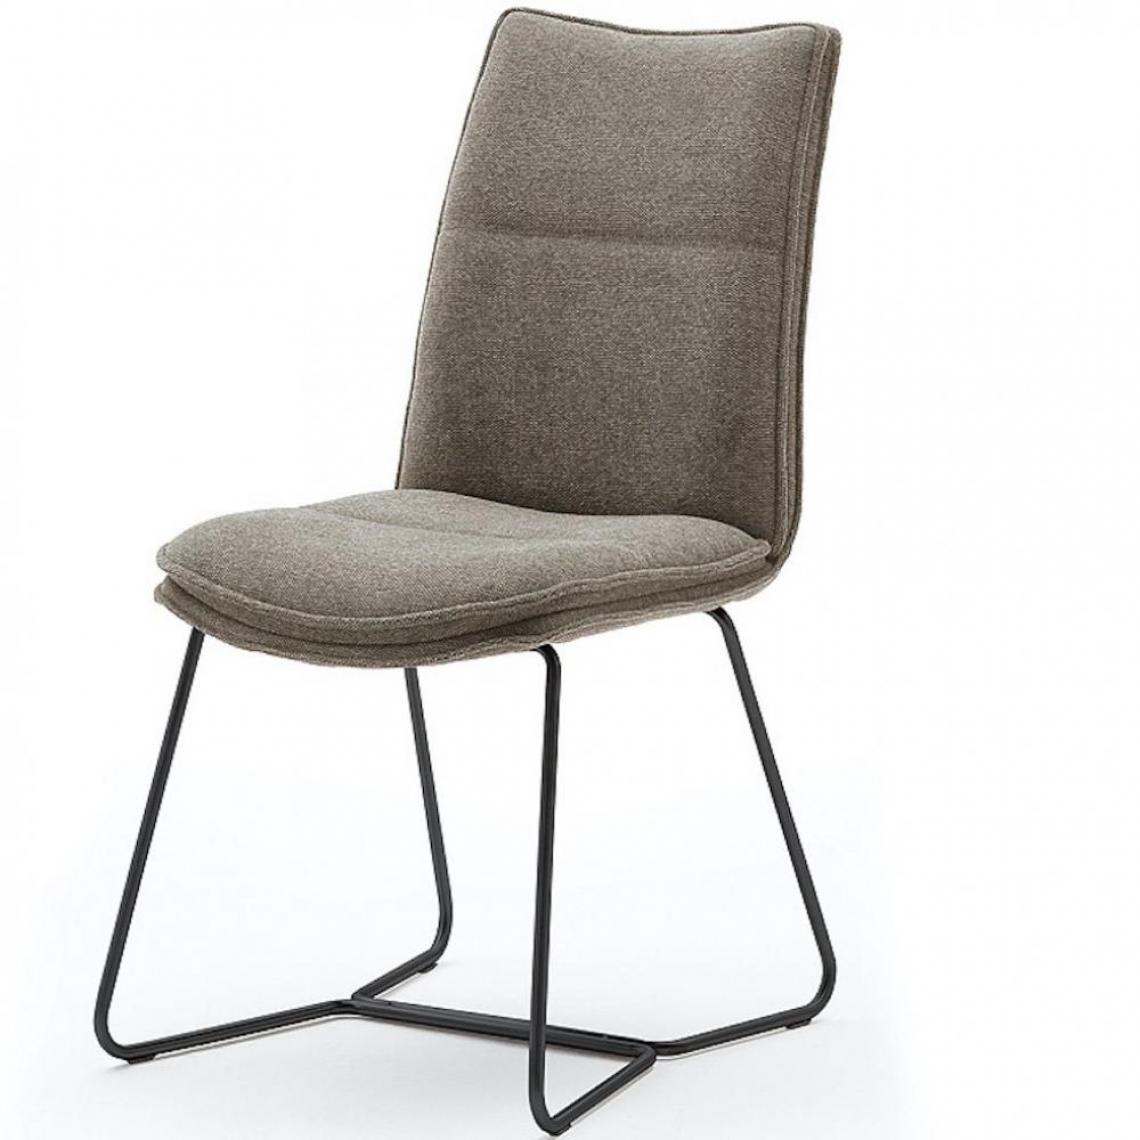 Inside 75 - Lot de 2 chaises design HALSOU tissu cappuccino et pieds métal laqué noir - Chaises